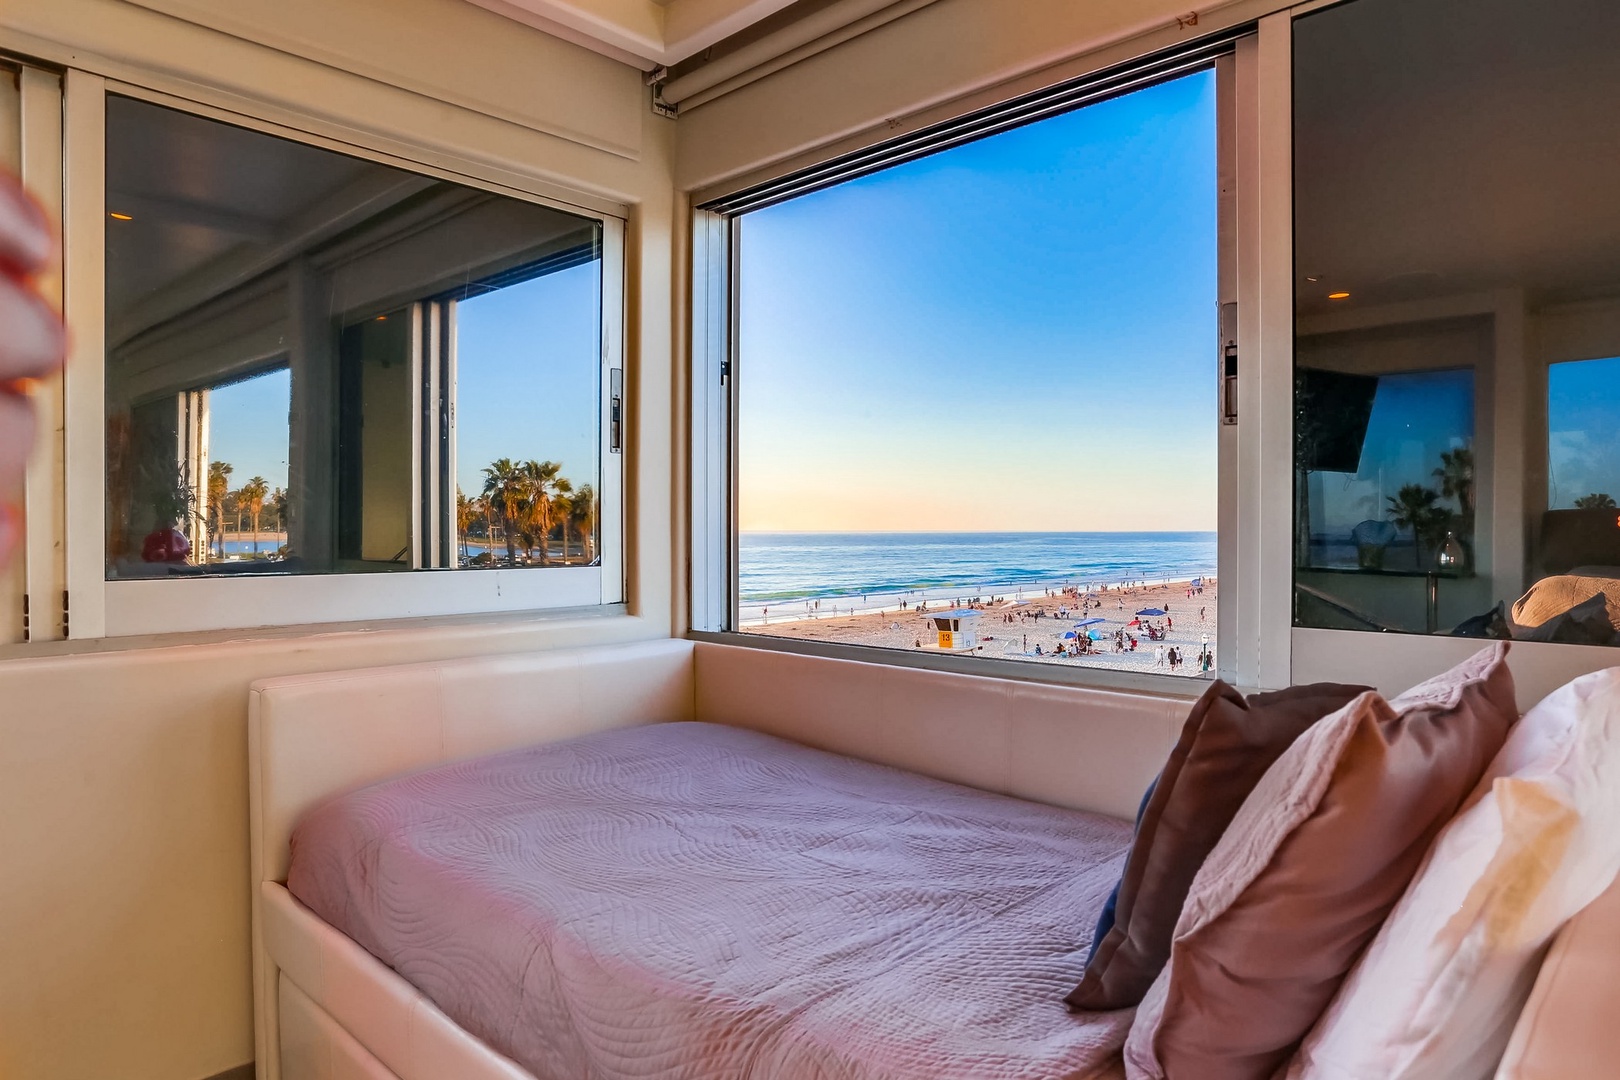 Ocean view bedroom